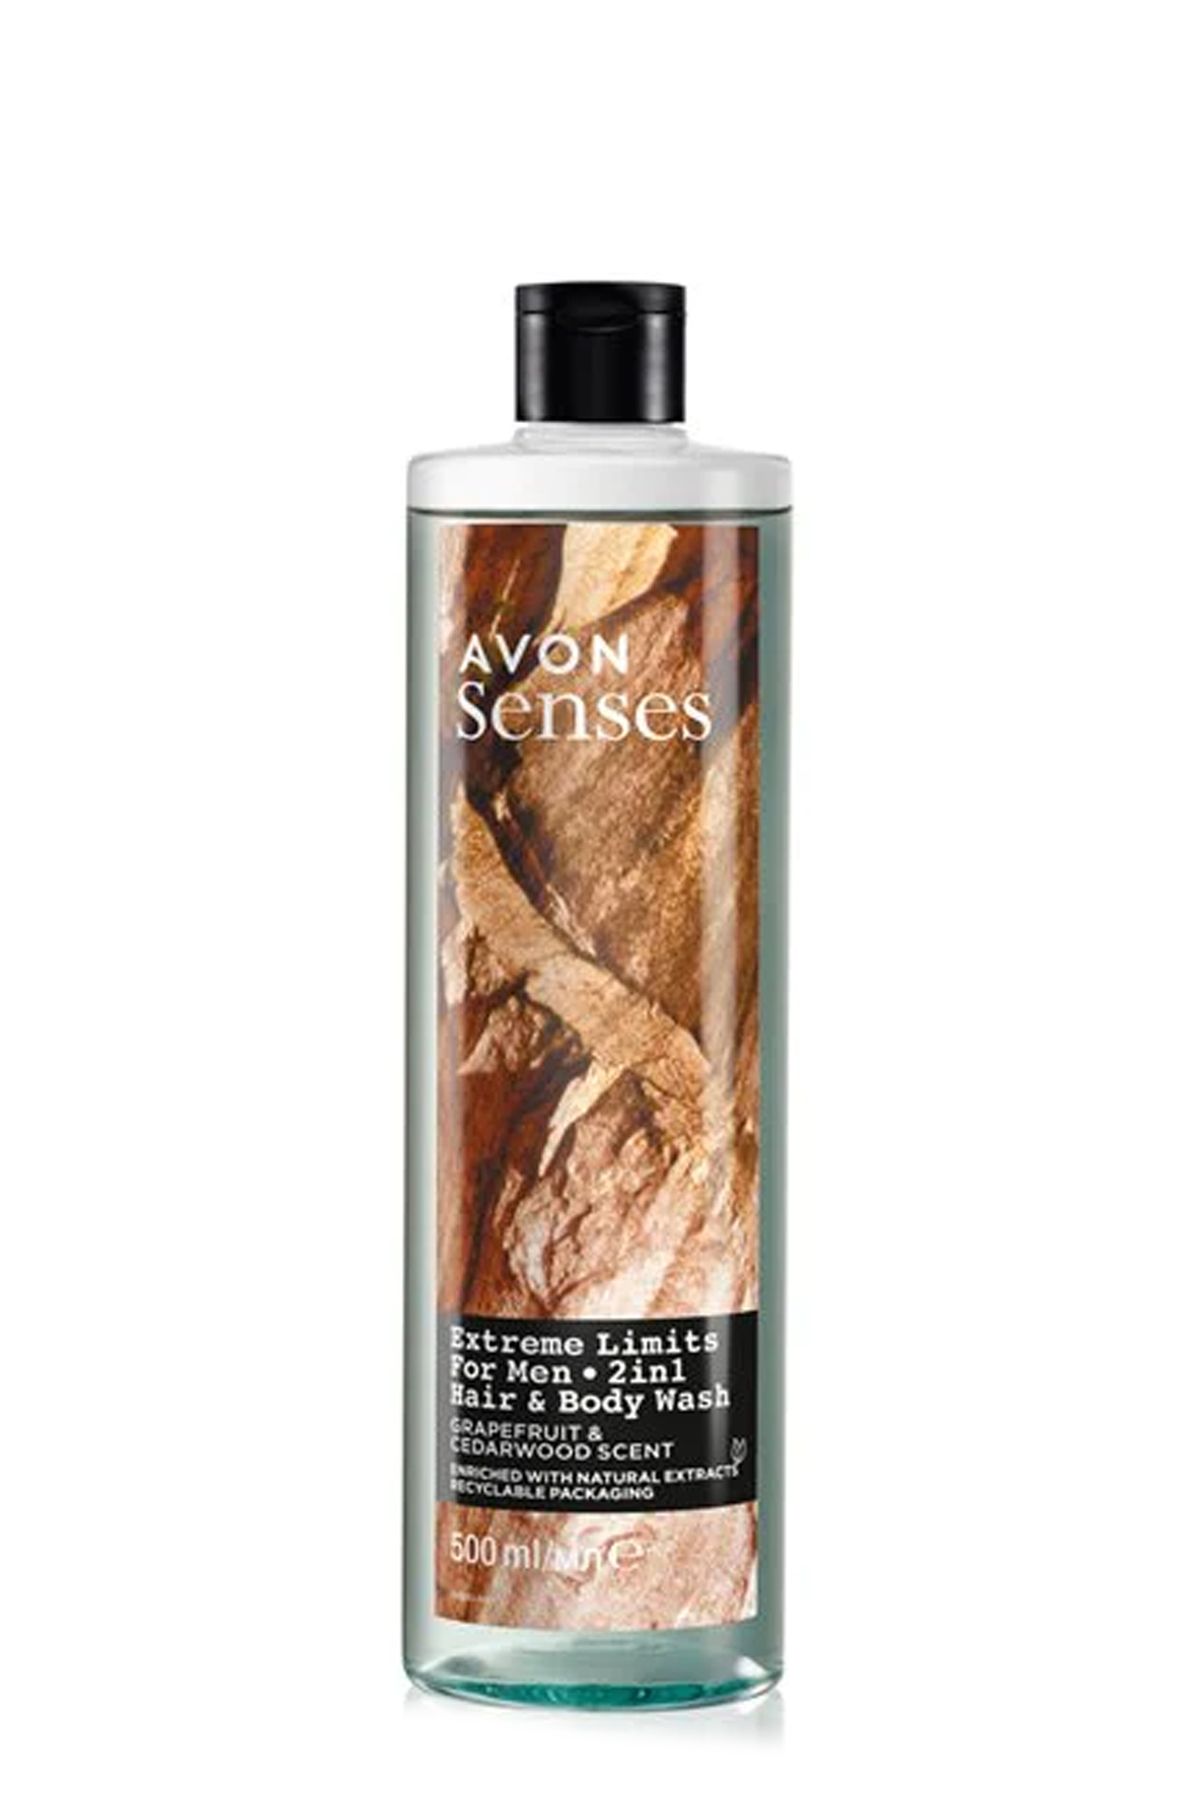 Avon Senses Extreme Limits Greyfurt ve Sandal Kokulu Saç ve Vücut için Erkek Duş Jeli 500 Ml.